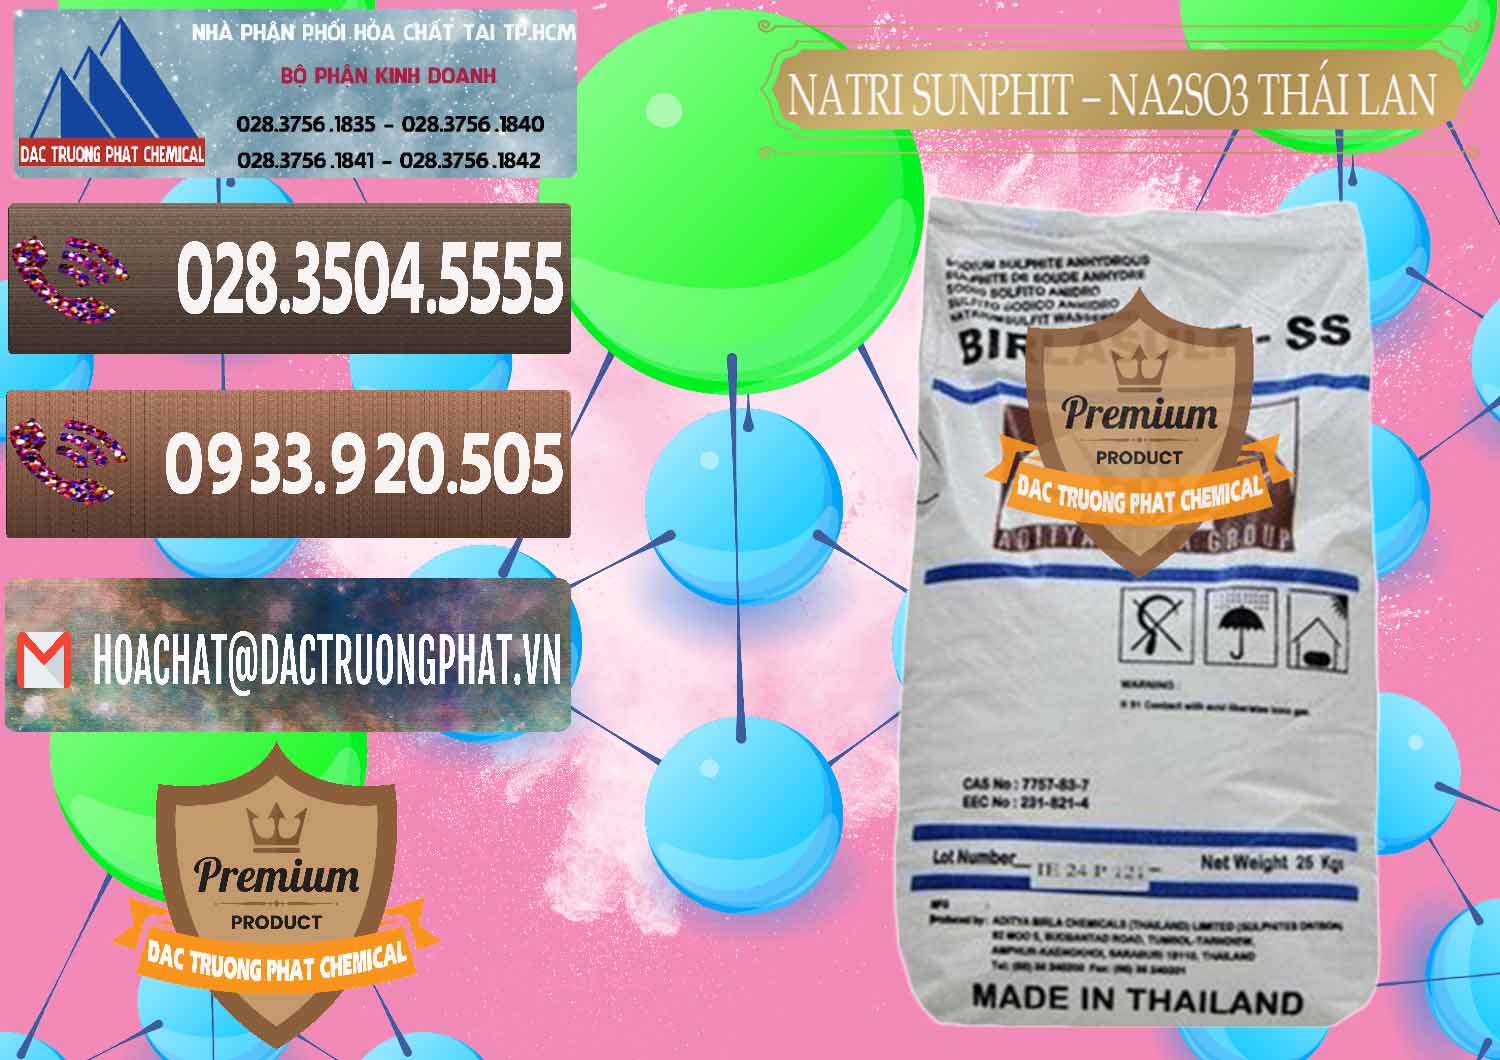 Cty chuyên nhập khẩu _ bán Natri Sunphit - NA2SO3 Thái Lan - 0105 - Nhà cung ứng - phân phối hóa chất tại TP.HCM - hoachatviet.net